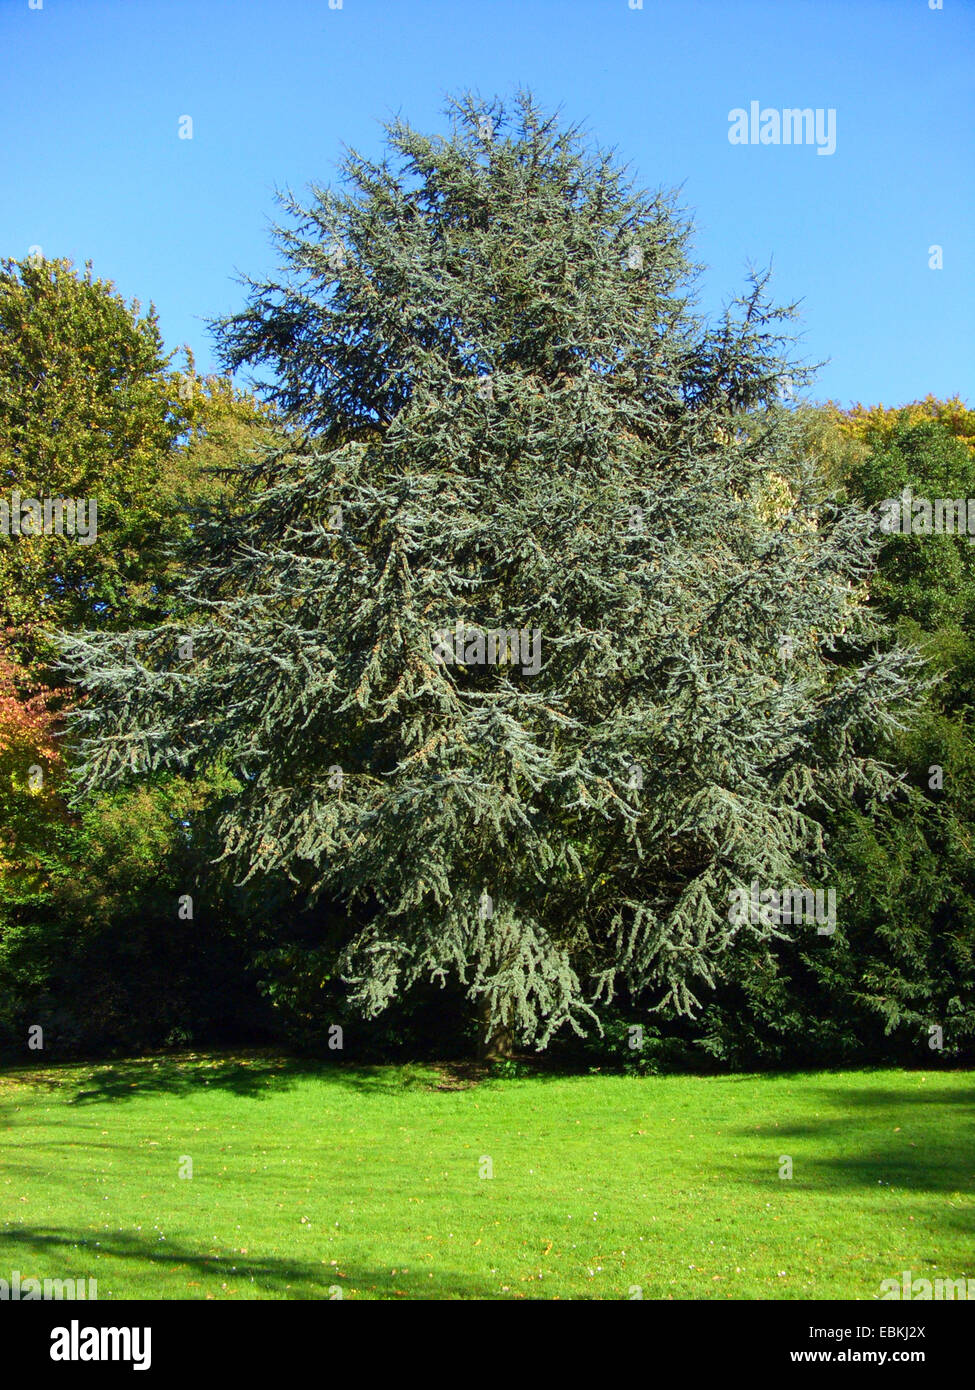 Blue cedar (Cedrus atlantica 'Glauca', Cedrus atlantica Glauca), Glauca, single tree in a park Stock Photo